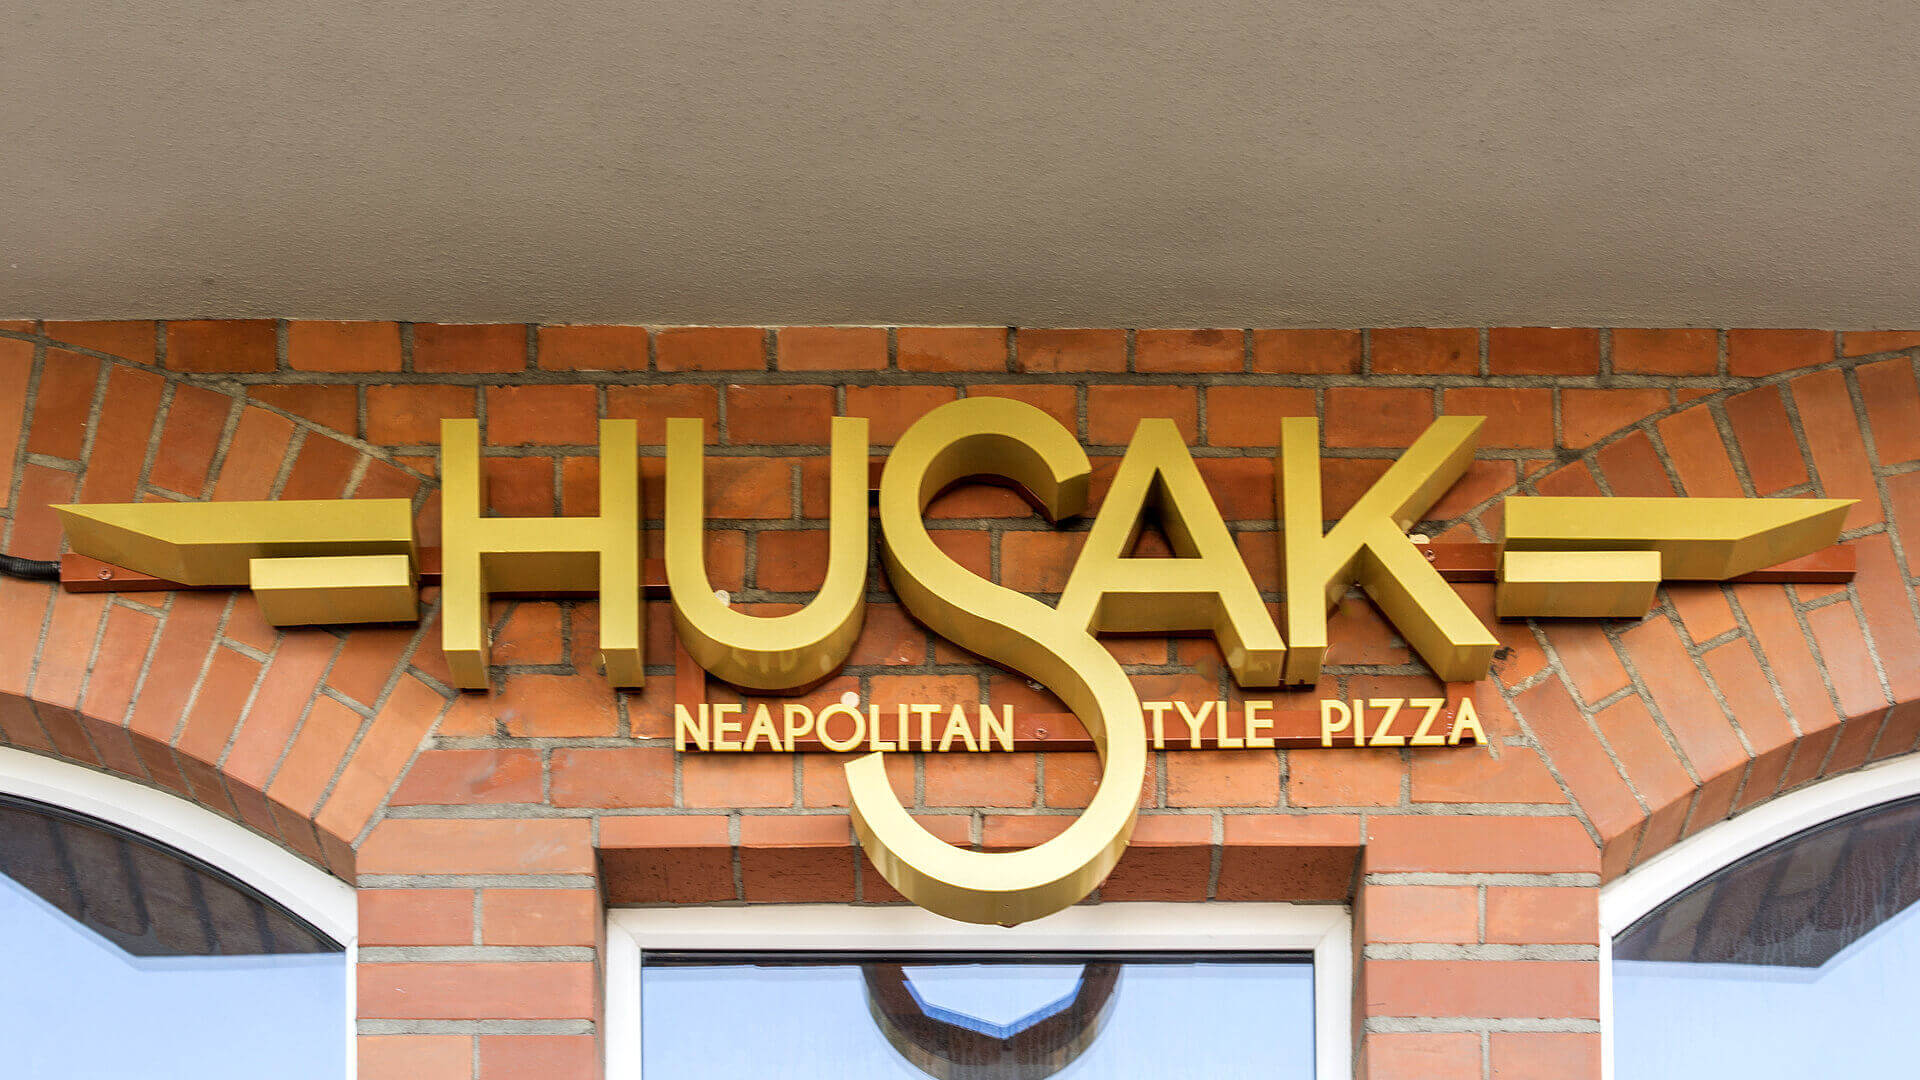 pizzería husak - husak-pizzeria-zlote-carteles-iluminados-en-la-pared-con-el-celo-sobre-la-entrada-sobre-la-superficie-señal-montada-en-la-pared-grunwaldzka-gdansk (14)